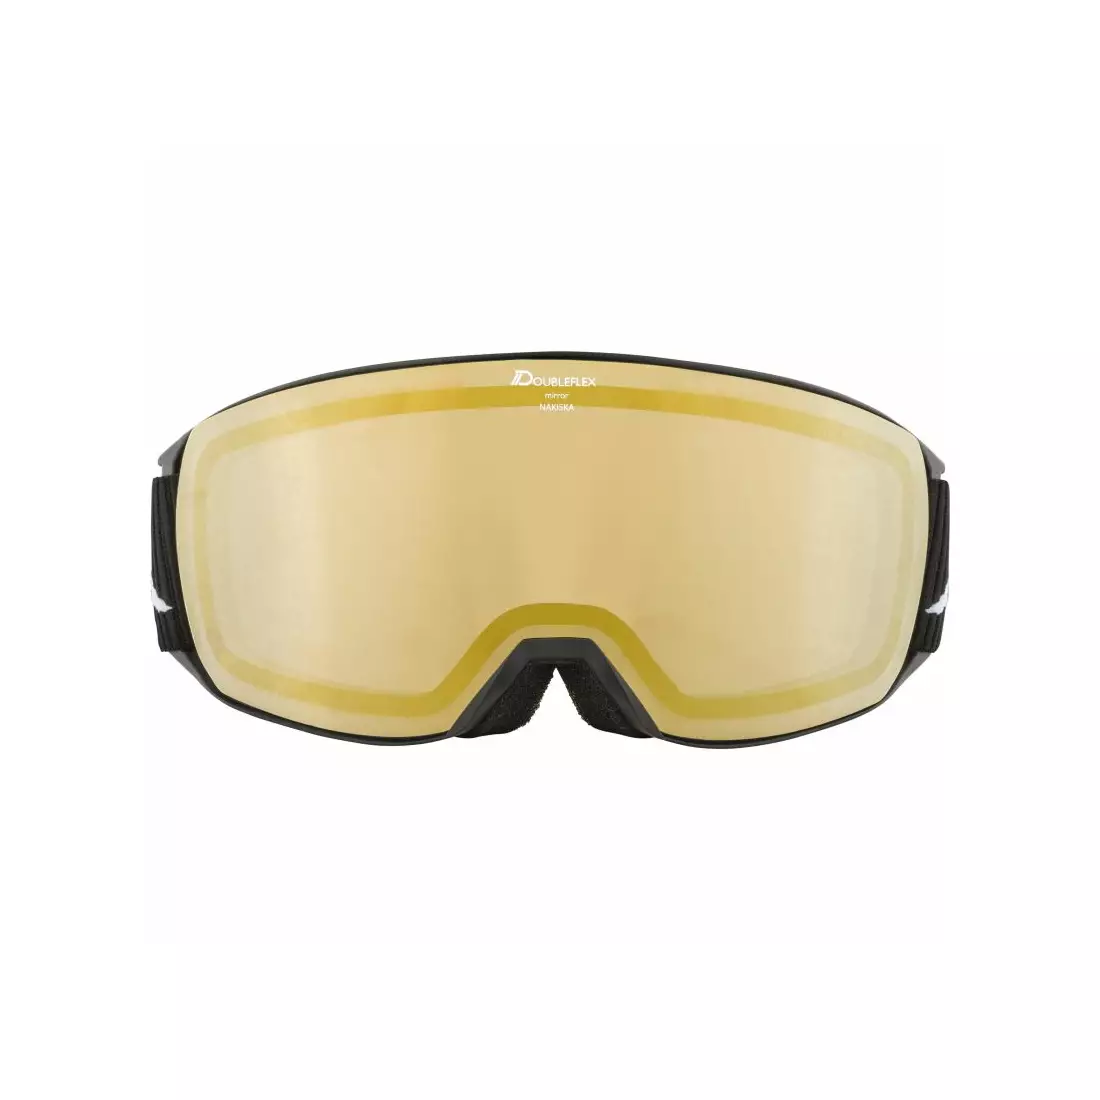 ALPINA sí / snowboard szemüveg M40 NAKISKA HM black A7280831